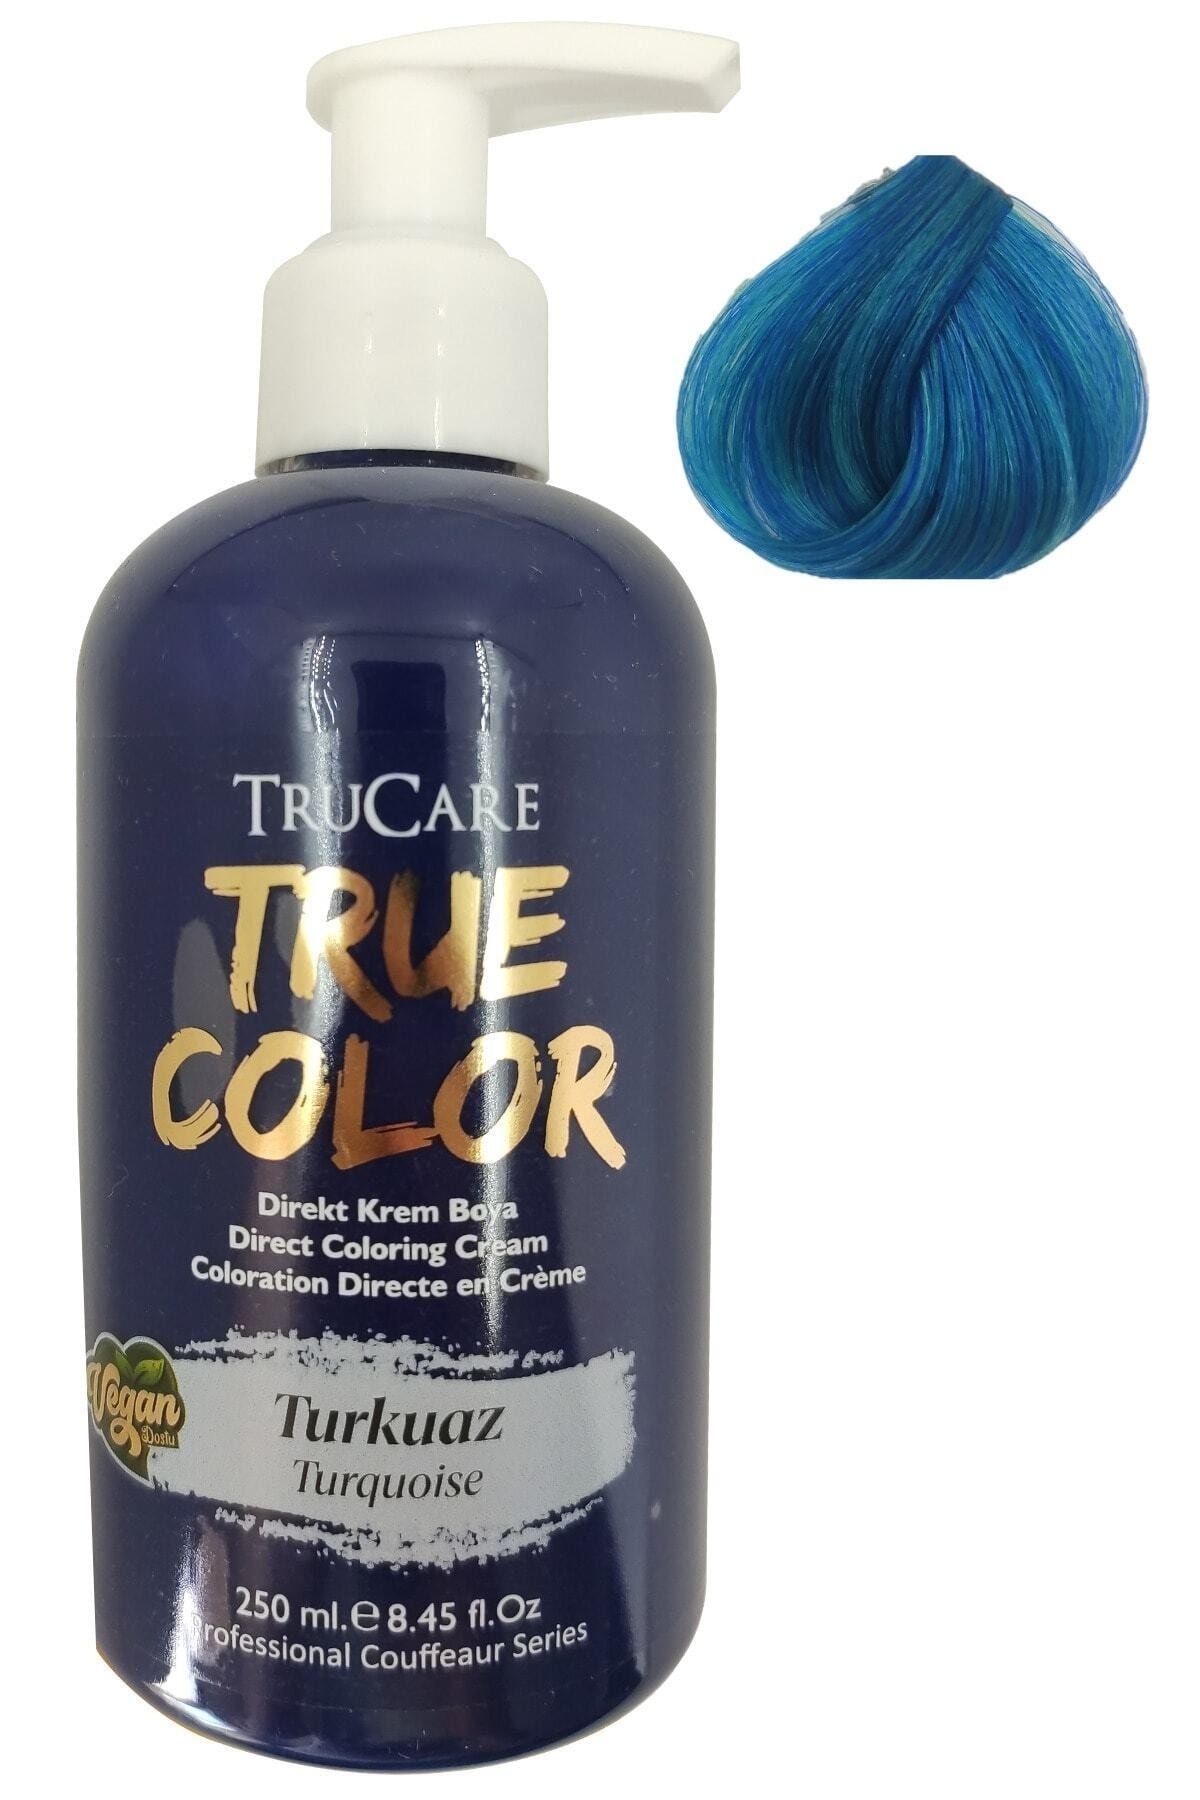 Trucare Truecolor Saç Boyası Turkuaz 250 ml